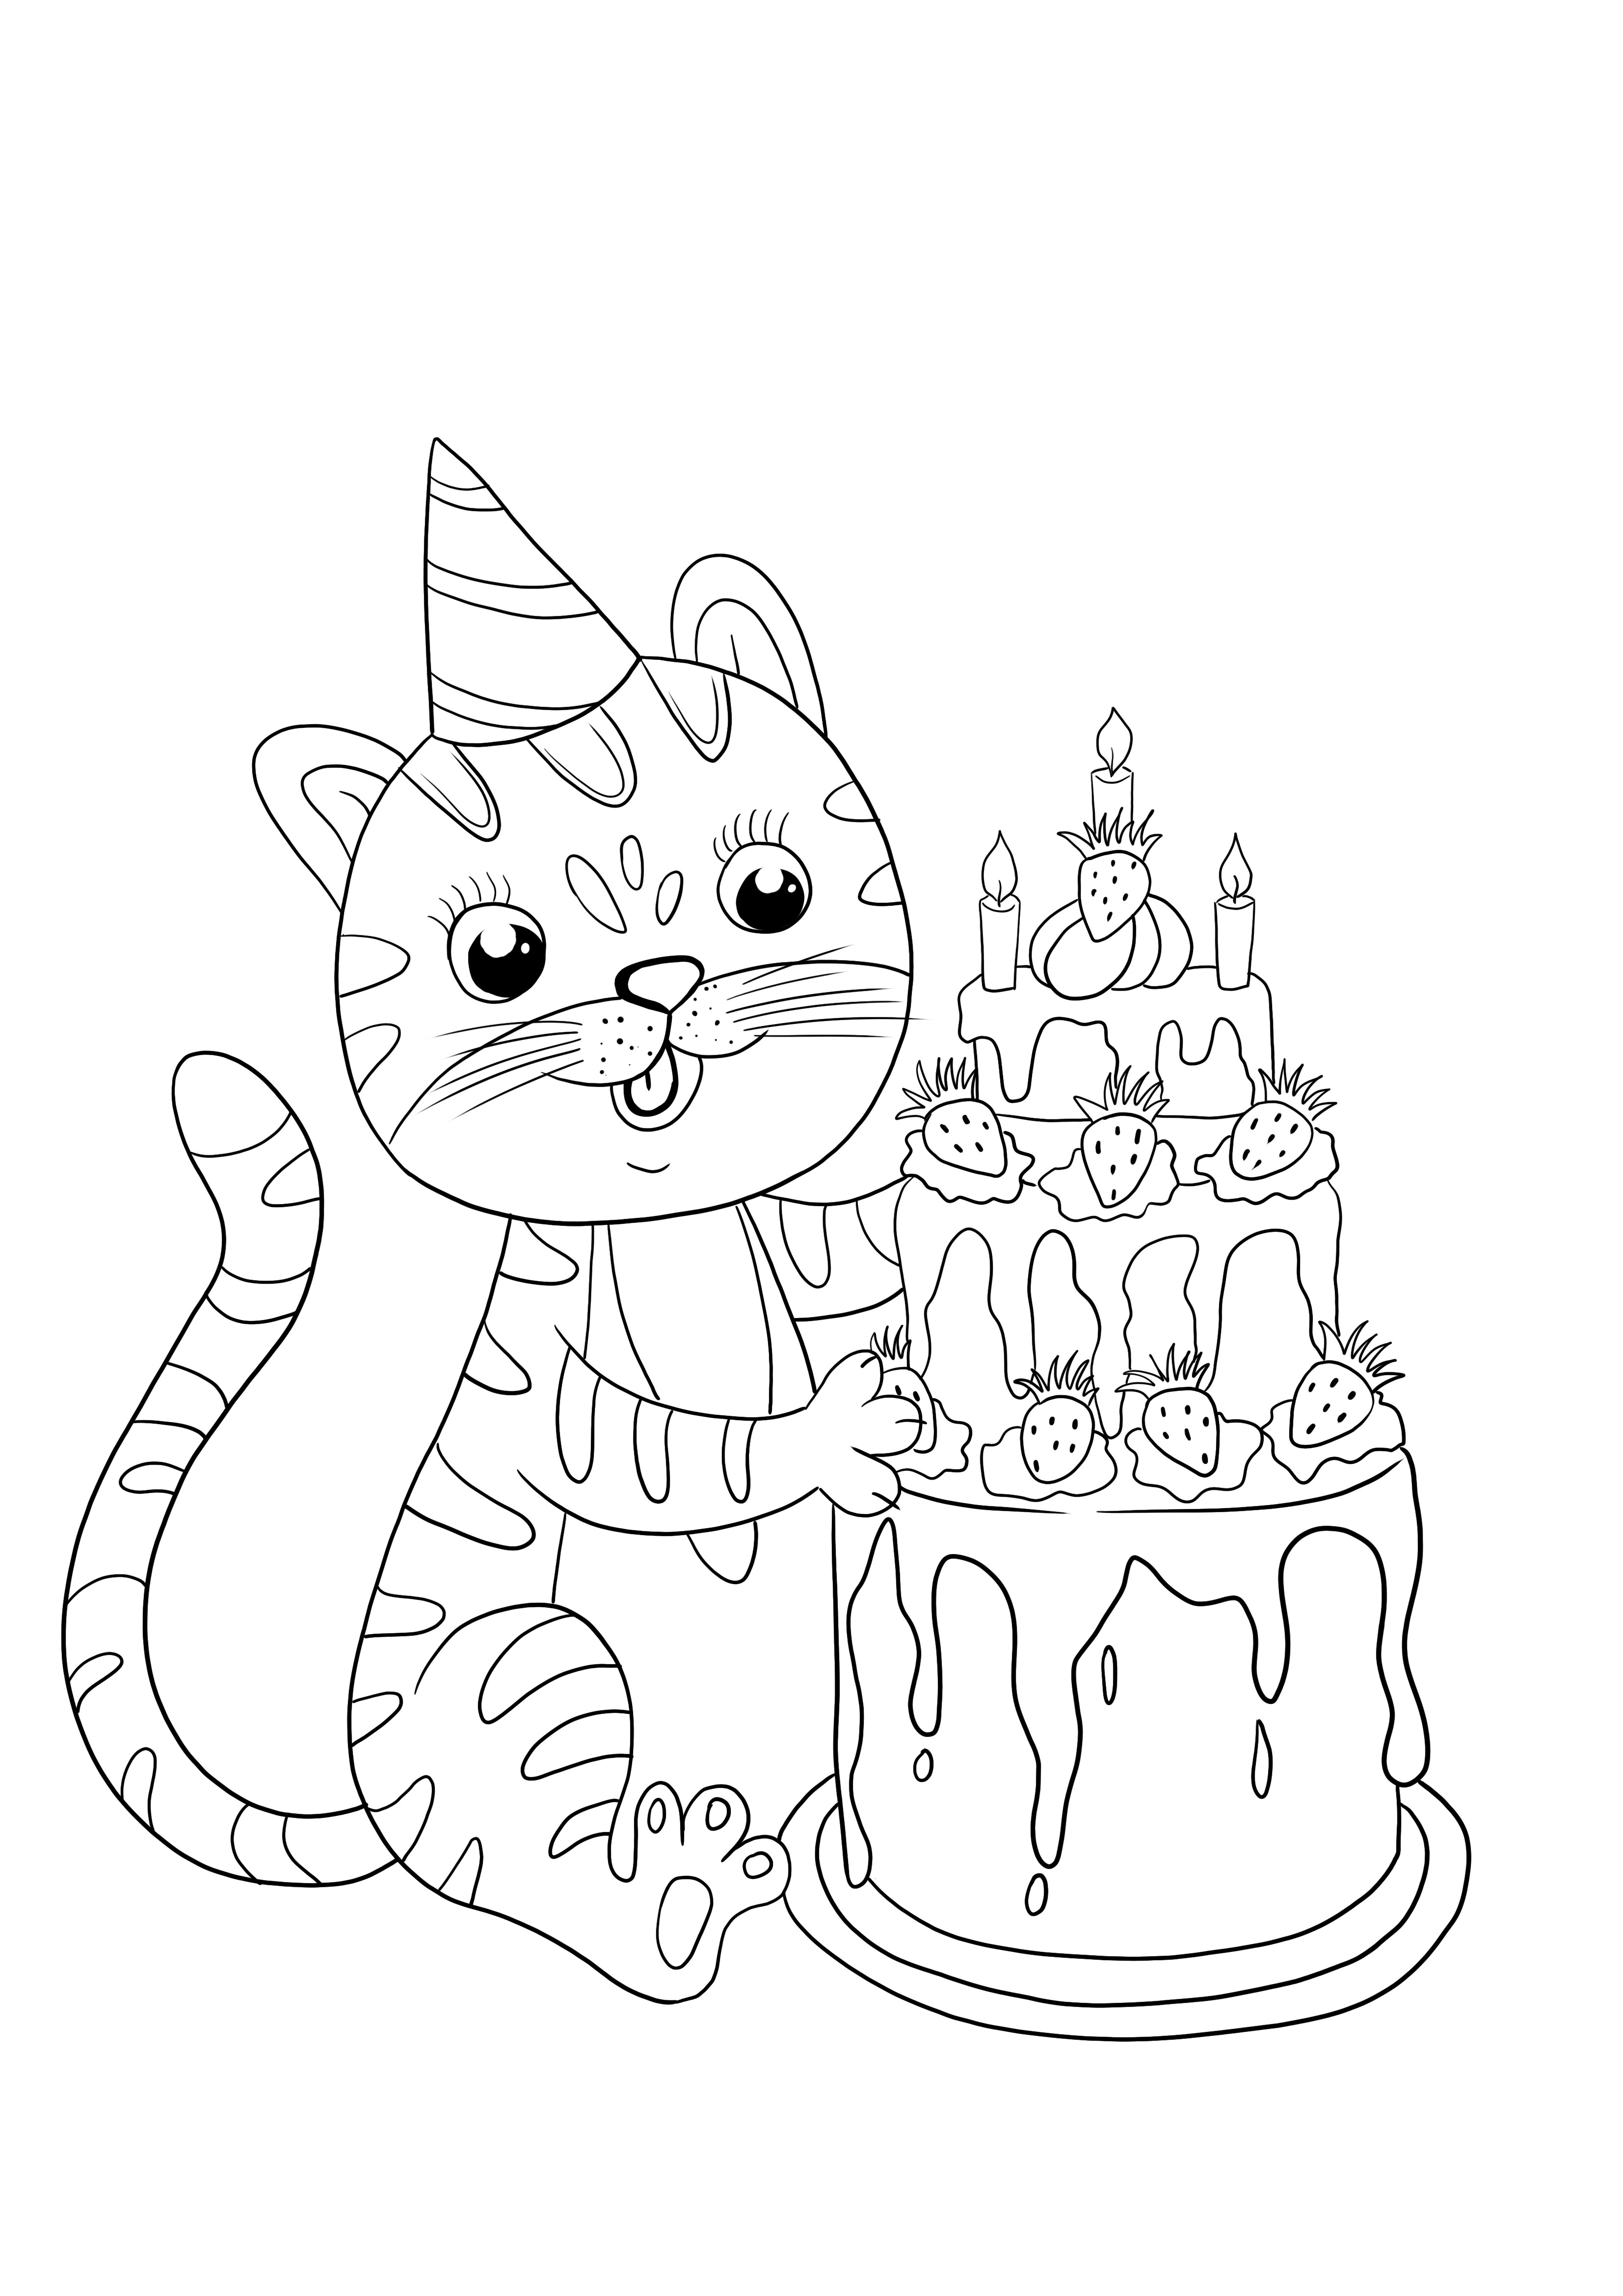 Carte d'anniversaire chat pour les enfants à colorier et imprimer